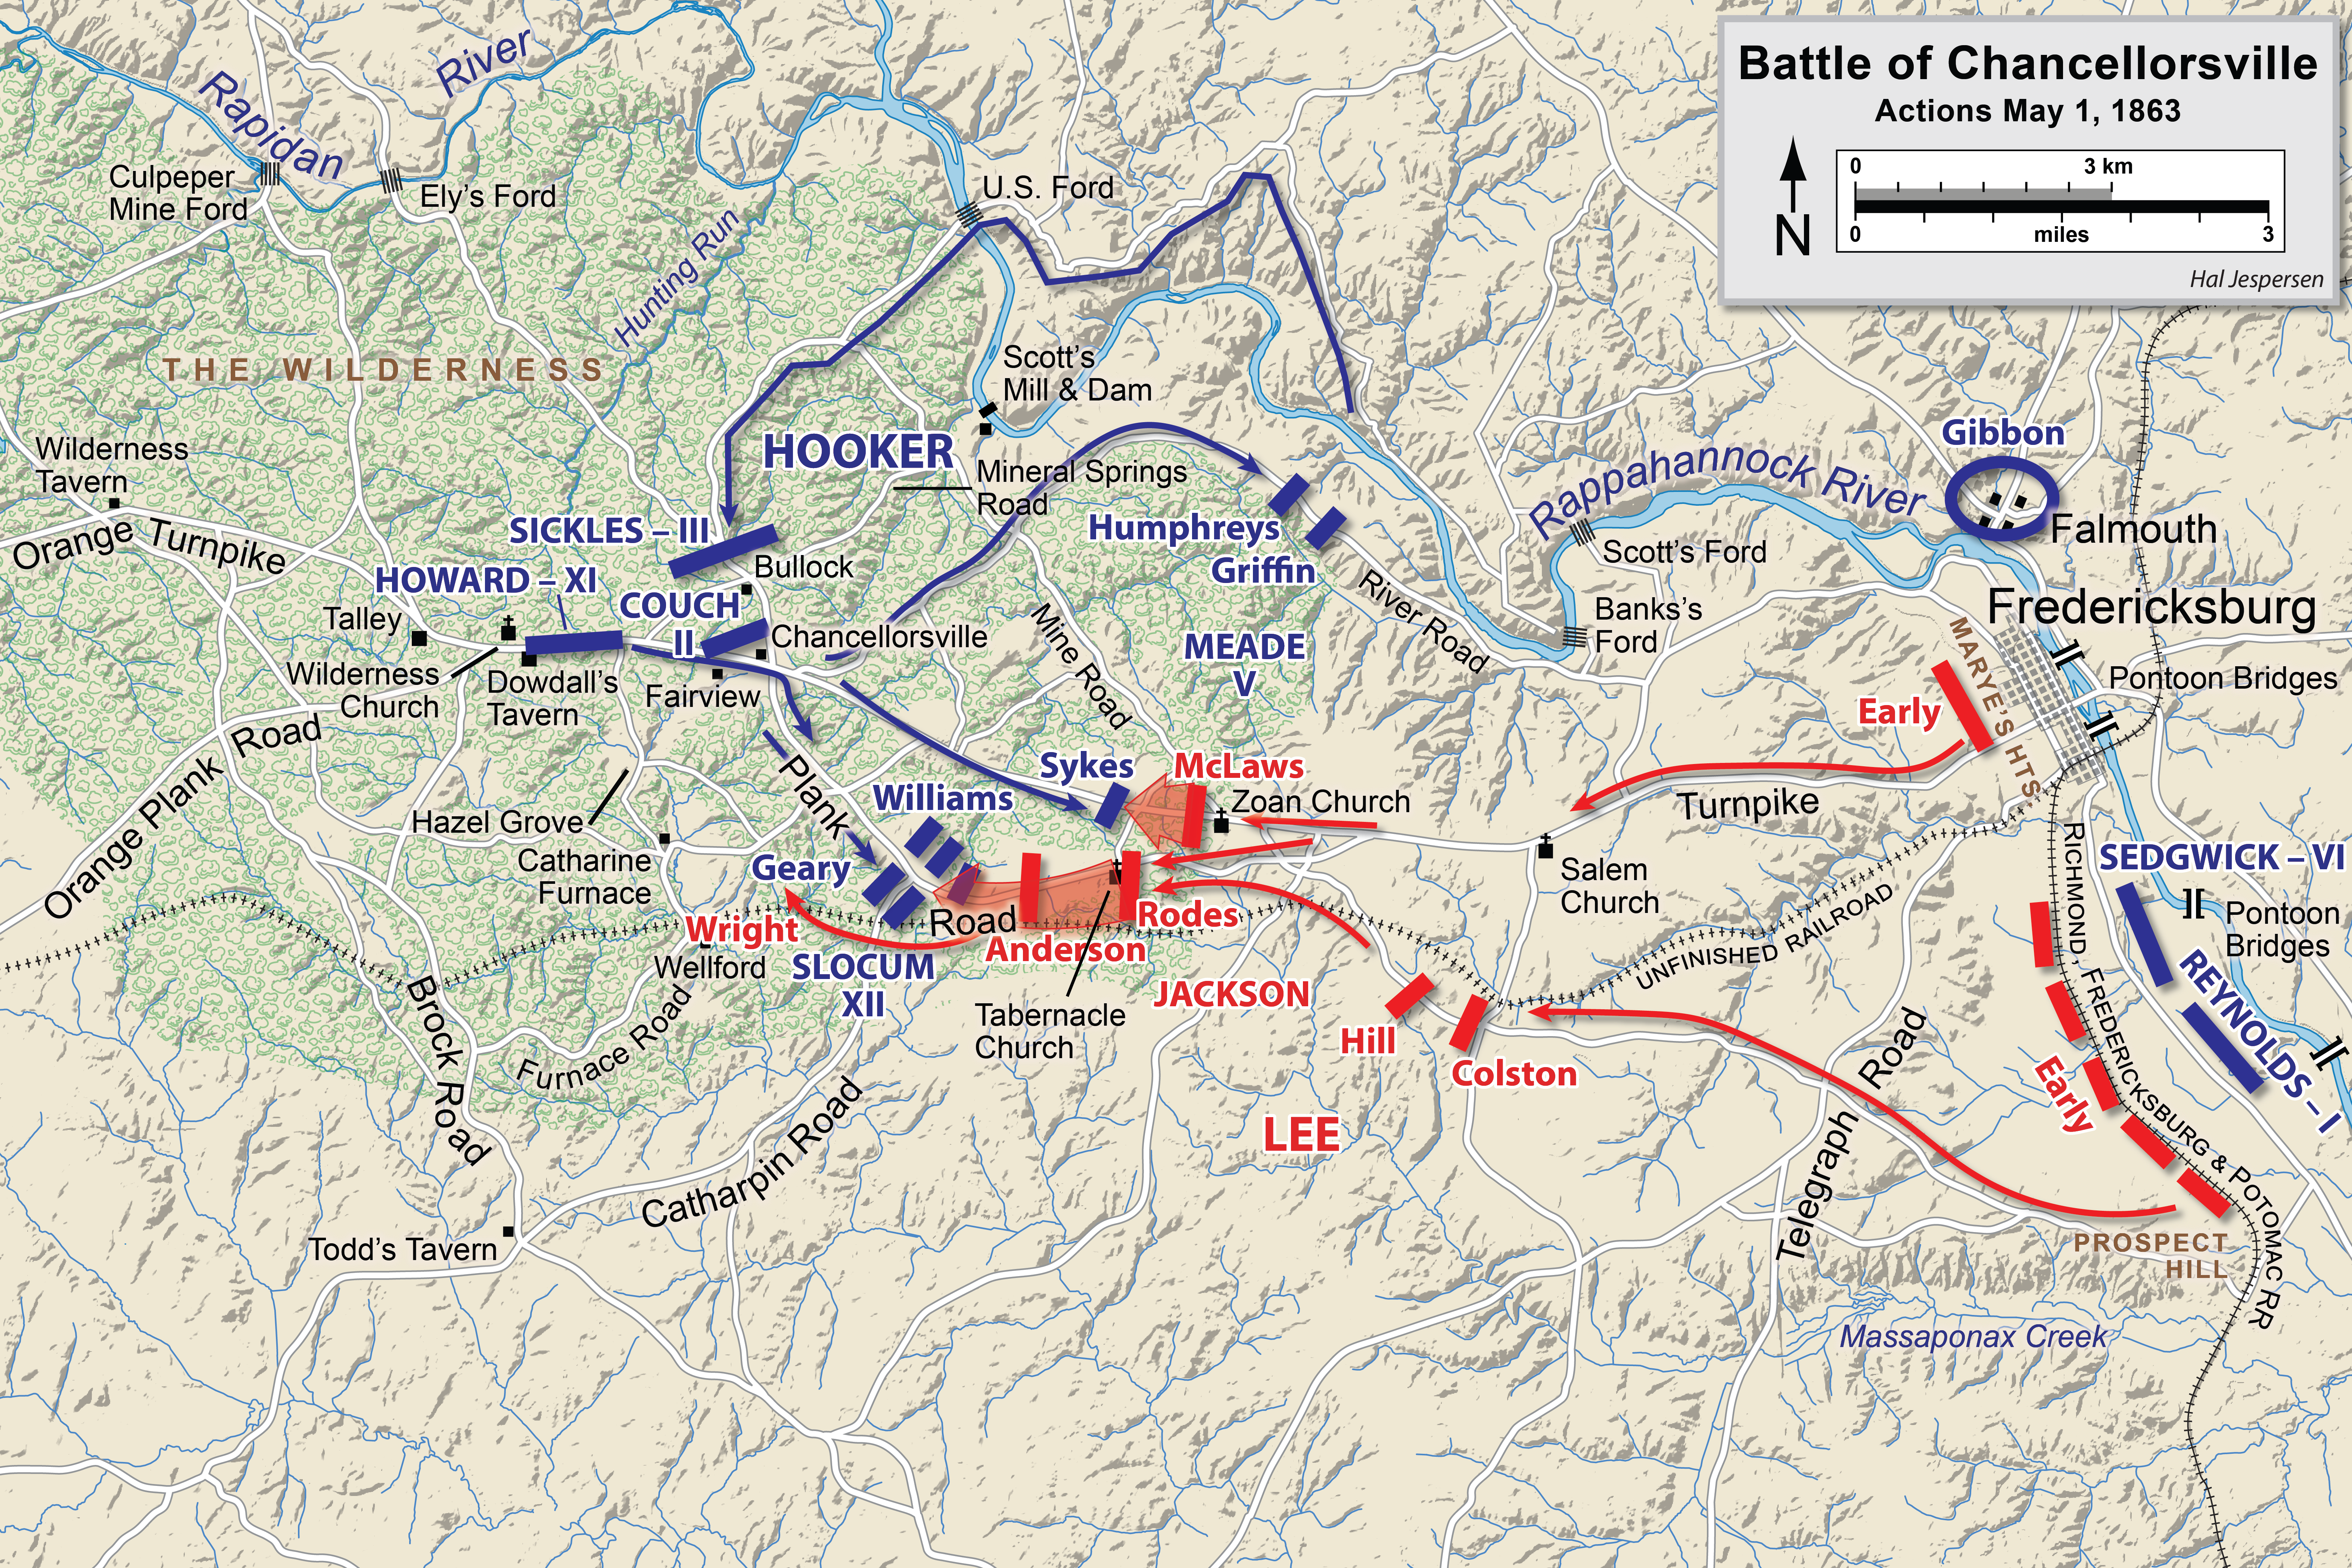 Battle of Chancellorsville begins